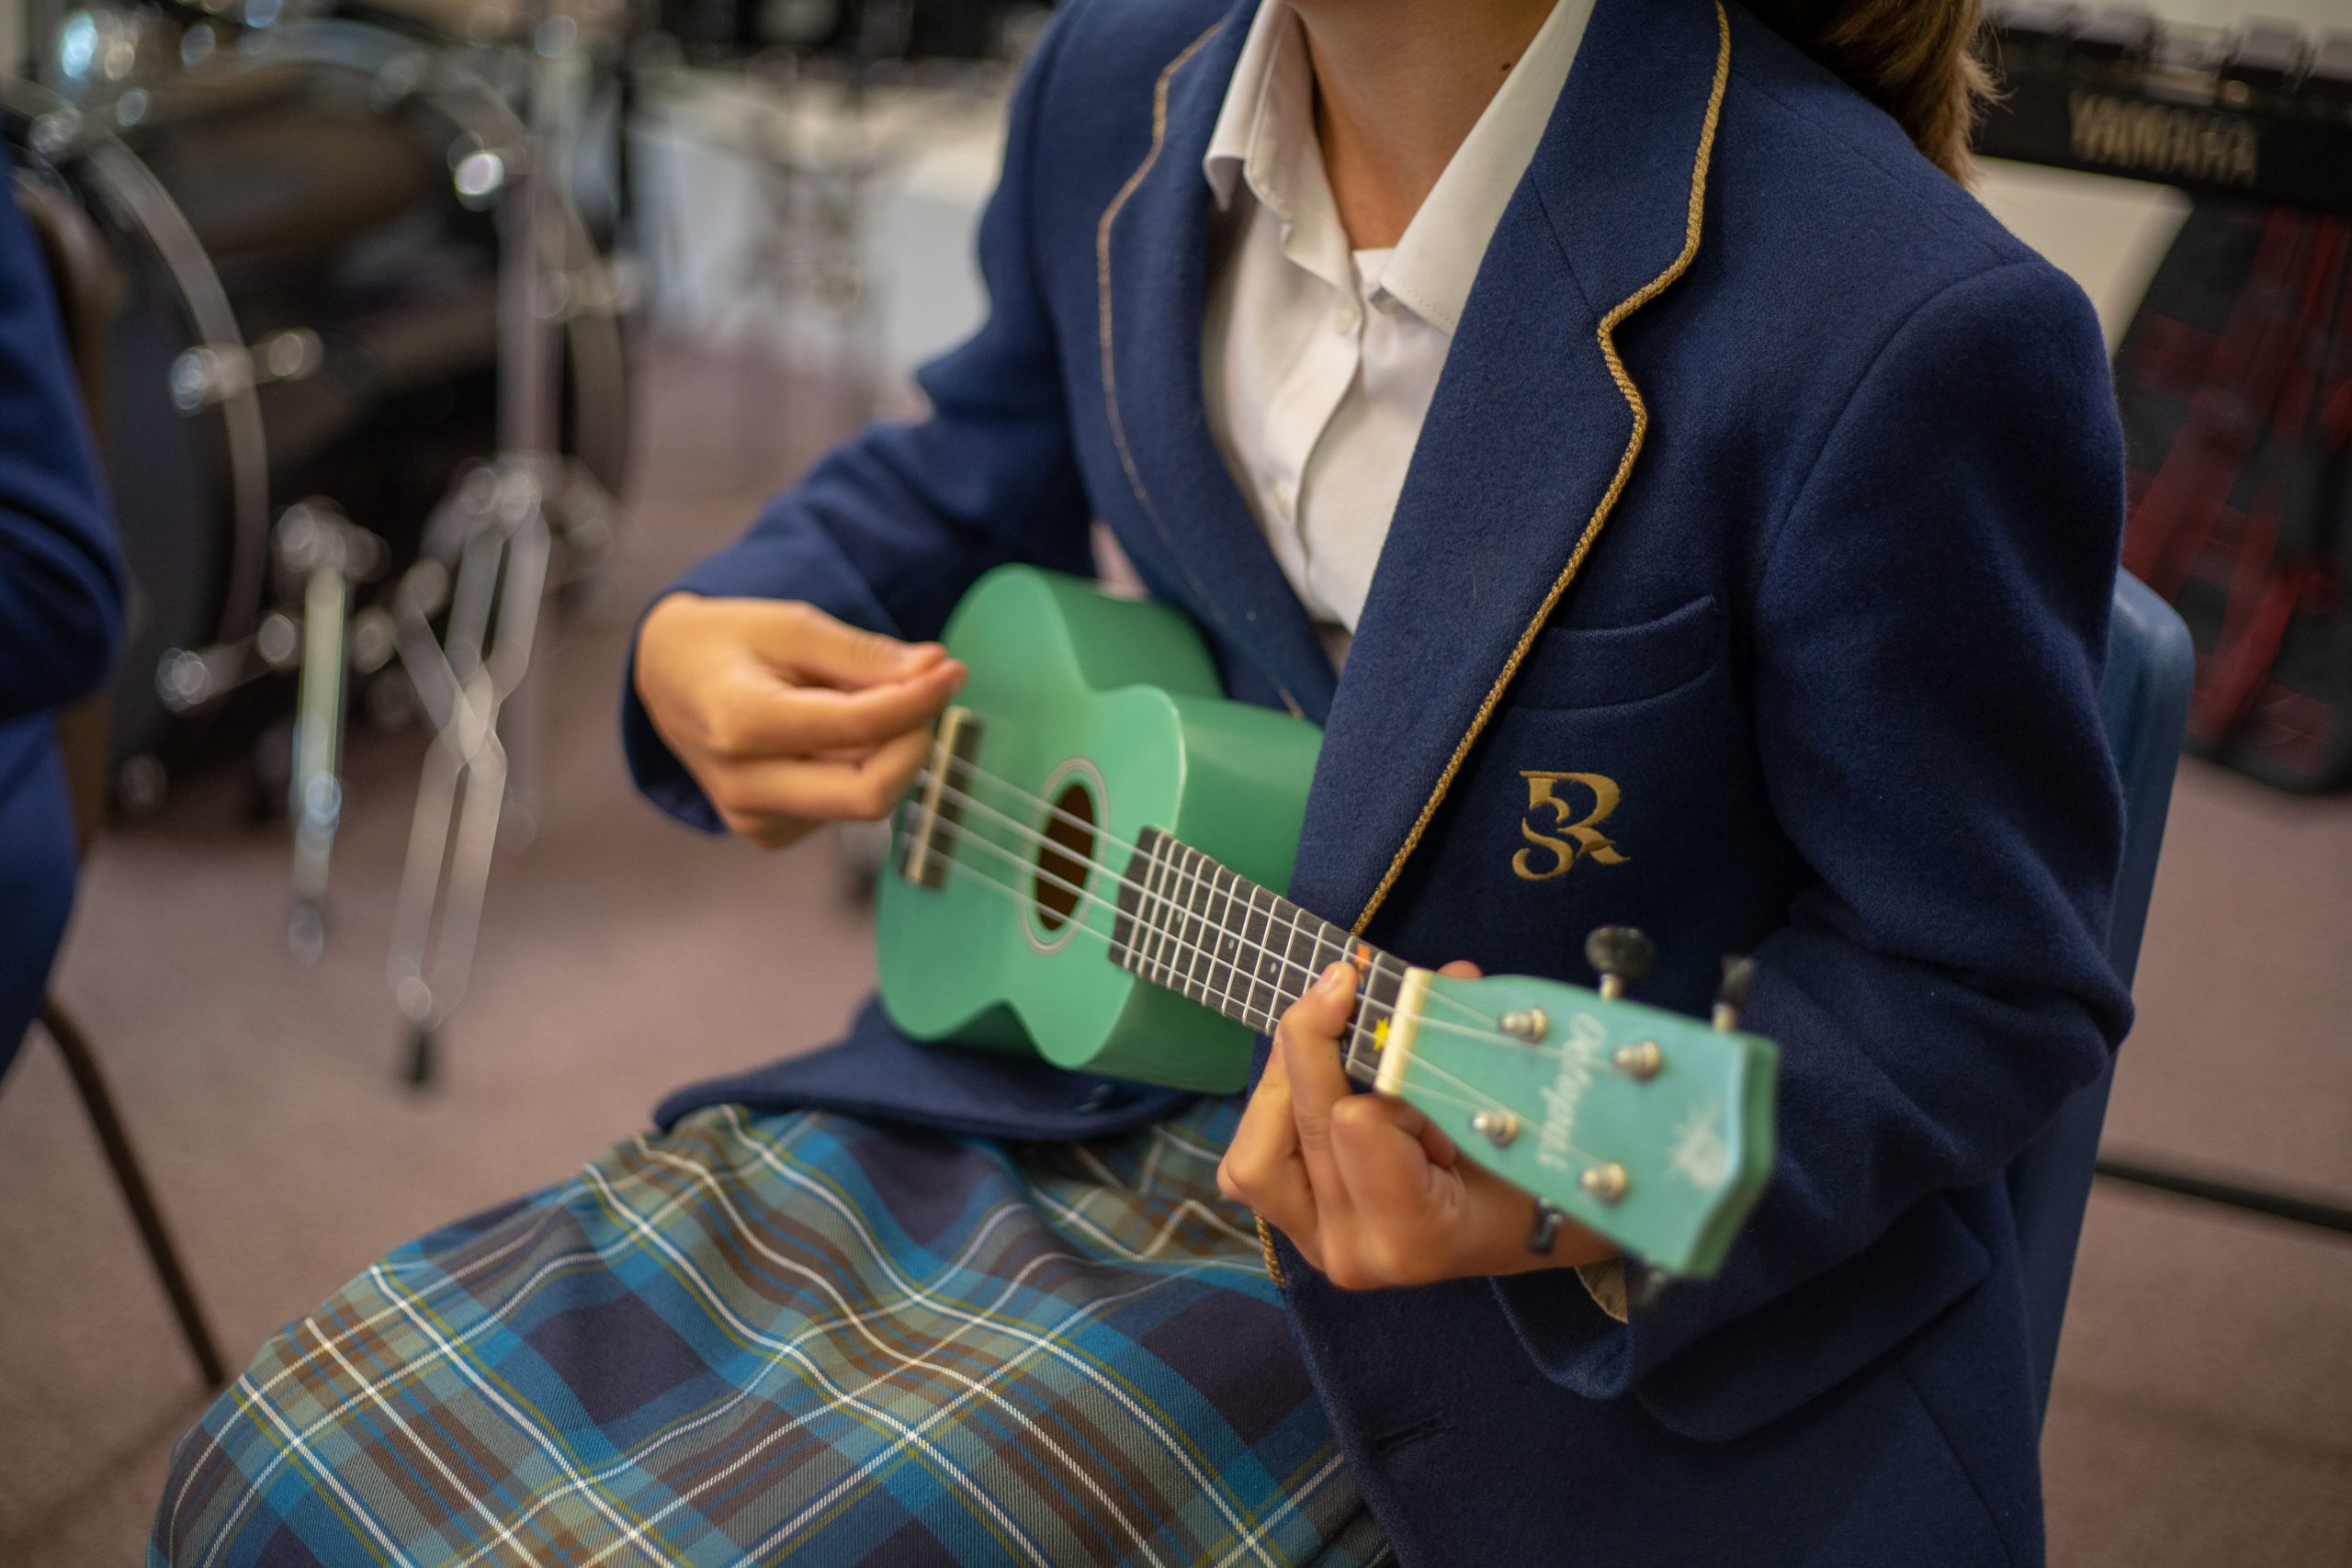 Rookwood School pupil playing the ukulele